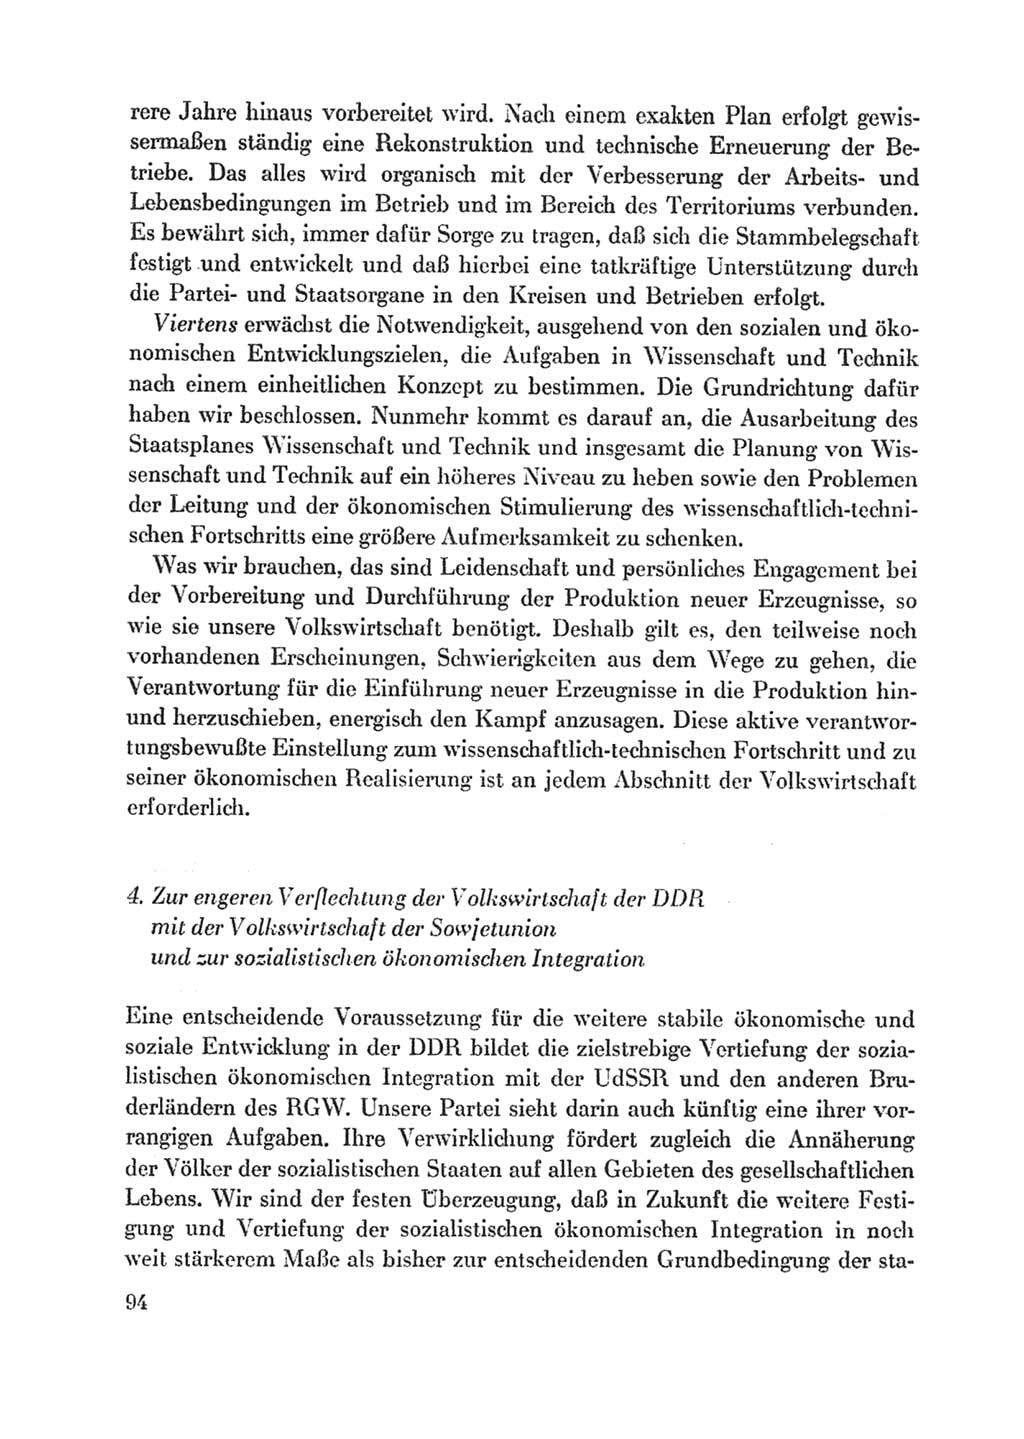 Protokoll der Verhandlungen des Ⅸ. Parteitages der Sozialistischen Einheitspartei Deutschlands (SED) [Deutsche Demokratische Republik (DDR)] 1976, Band 1, Seite 94 (Prot. Verh. Ⅸ. PT SED DDR 1976, Bd. 1, S. 94)